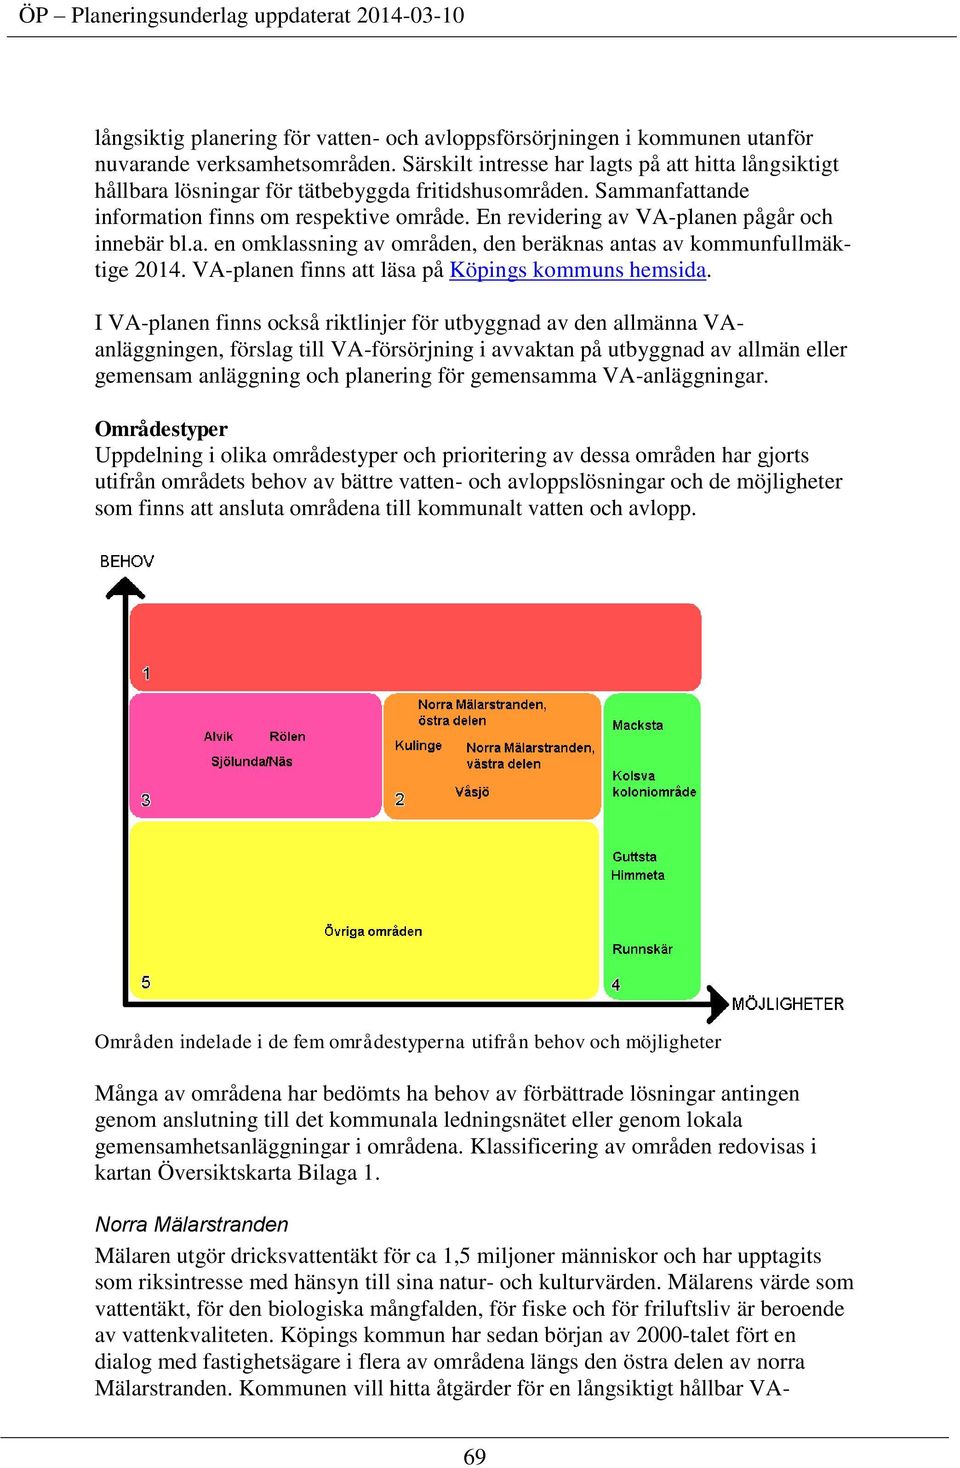 En revidering av VA-planen pågår och innebär bl.a. en omklassning av områden, den beräknas antas av kommunfullmäktige 2014. VA-planen finns att läsa på Köpings kommuns hemsida.